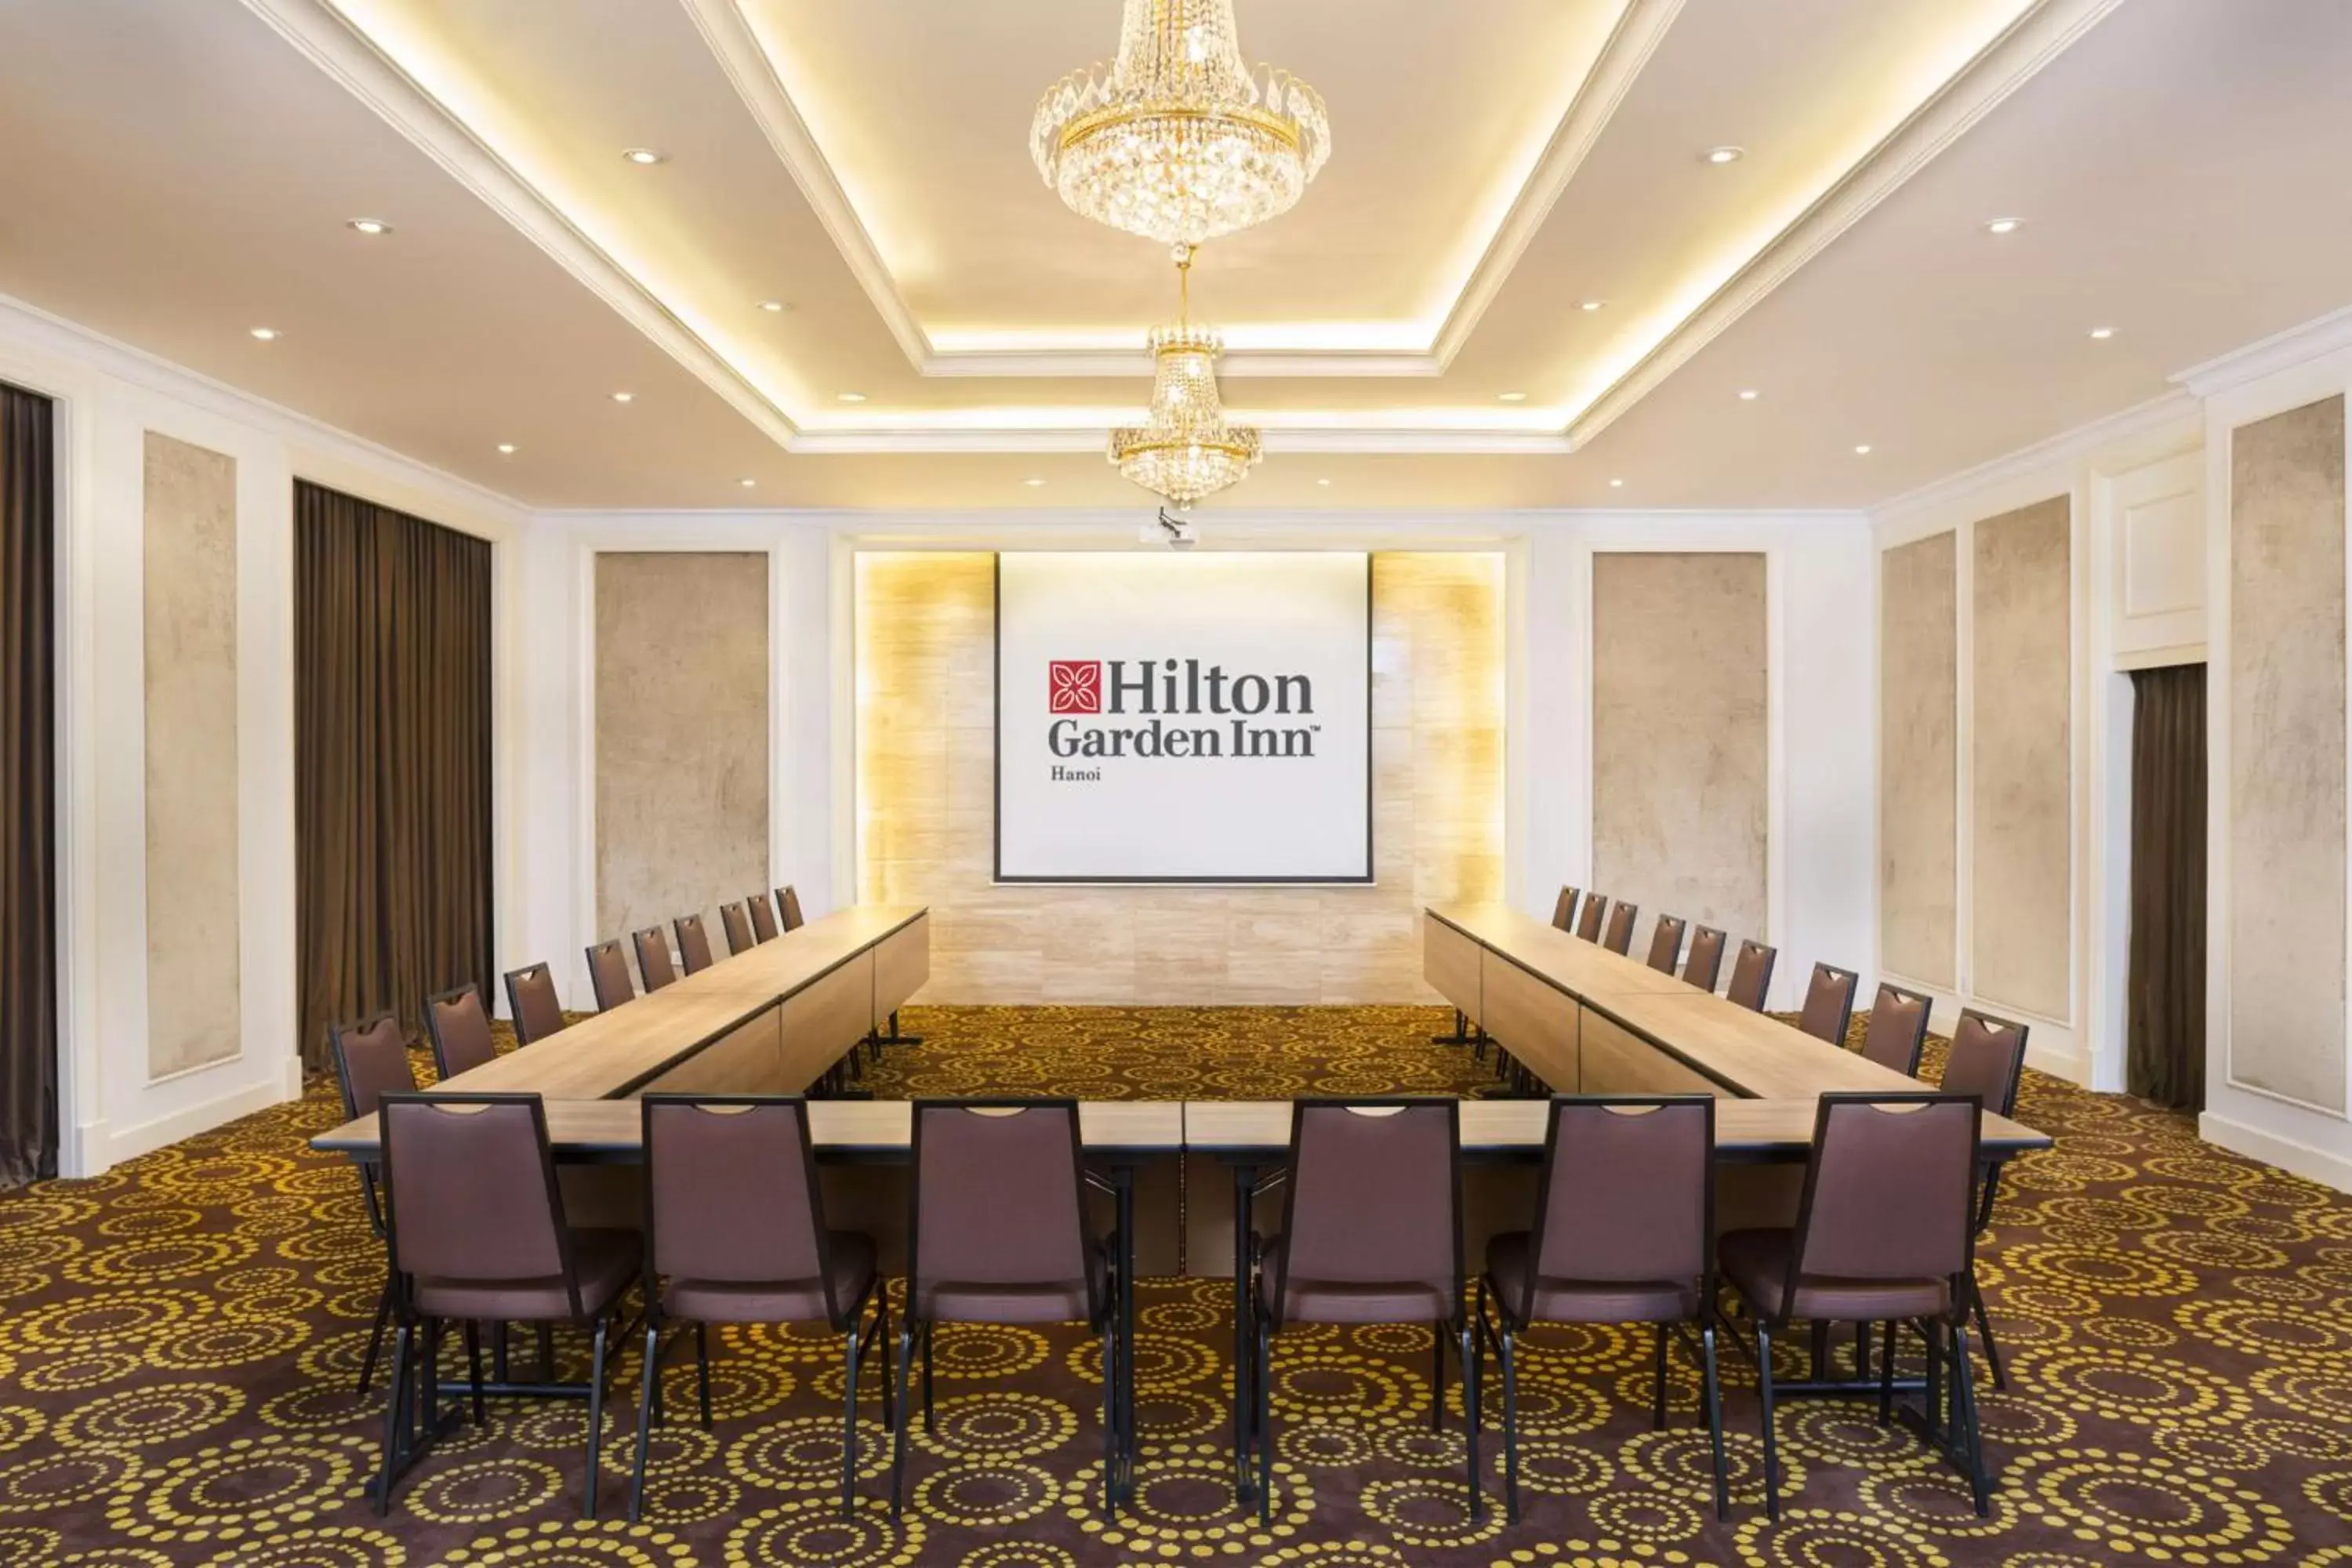 Meeting/conference room in Hilton Garden Inn Hanoi